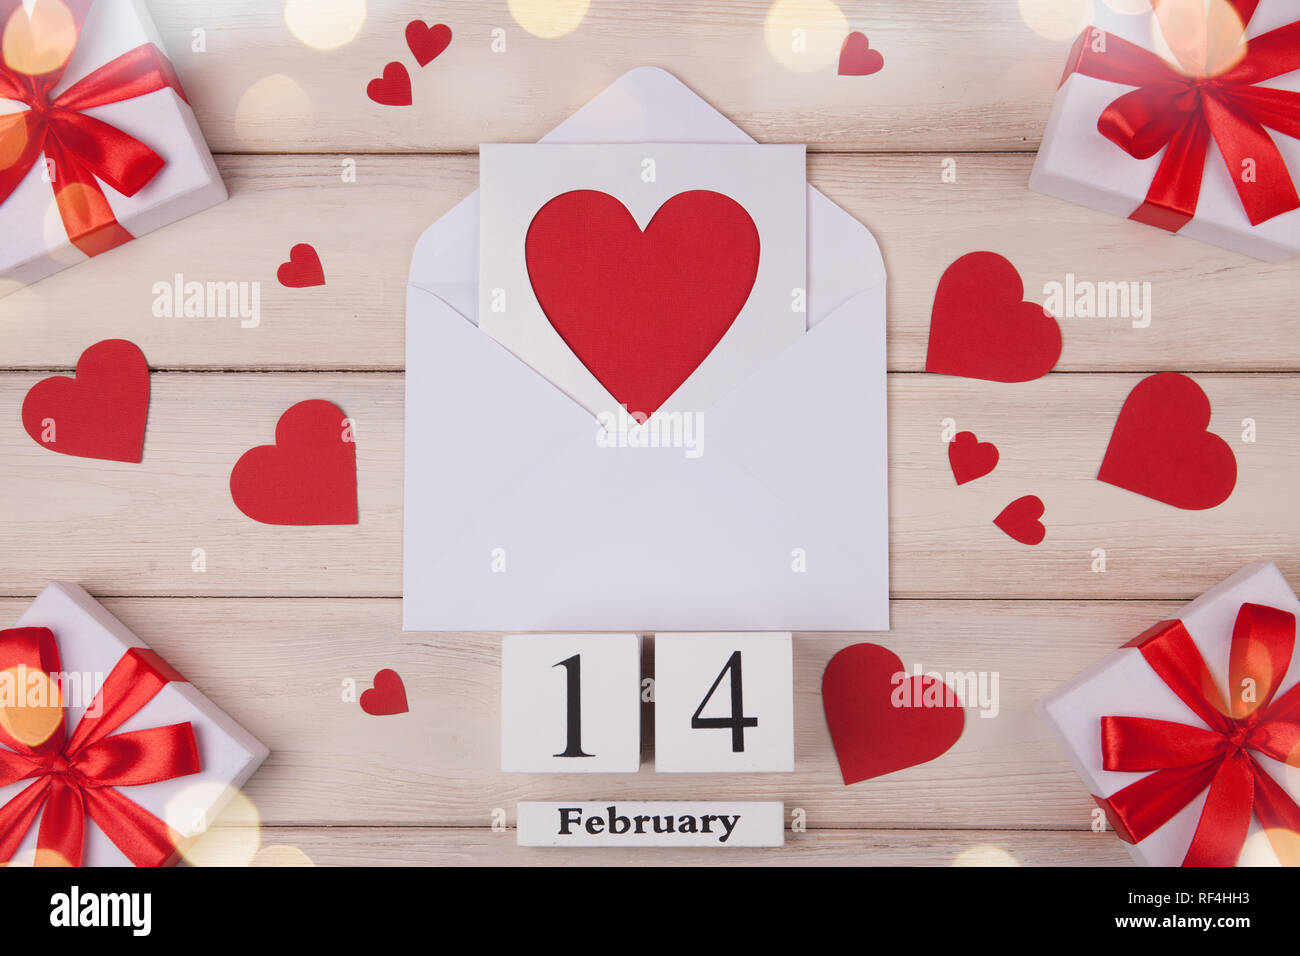 Fondo blanco de madera con corazones rojos, regalos, amor y un bloque de madera sobre el calendario. El concepto de Día de San Valentín. Vista superior. Foto de stock